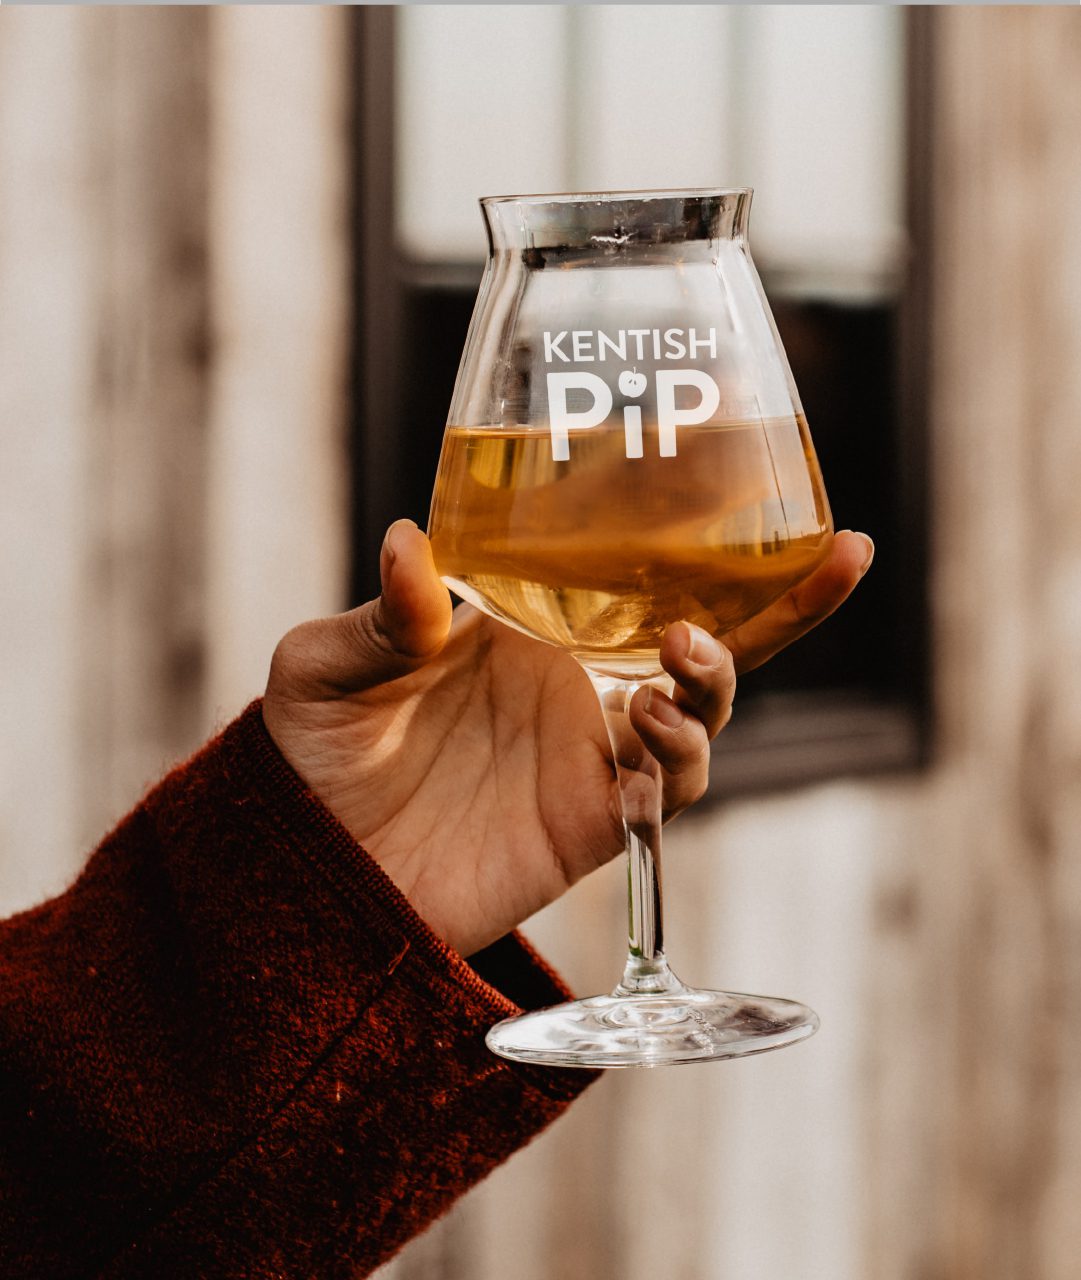 Kentish Pip cider